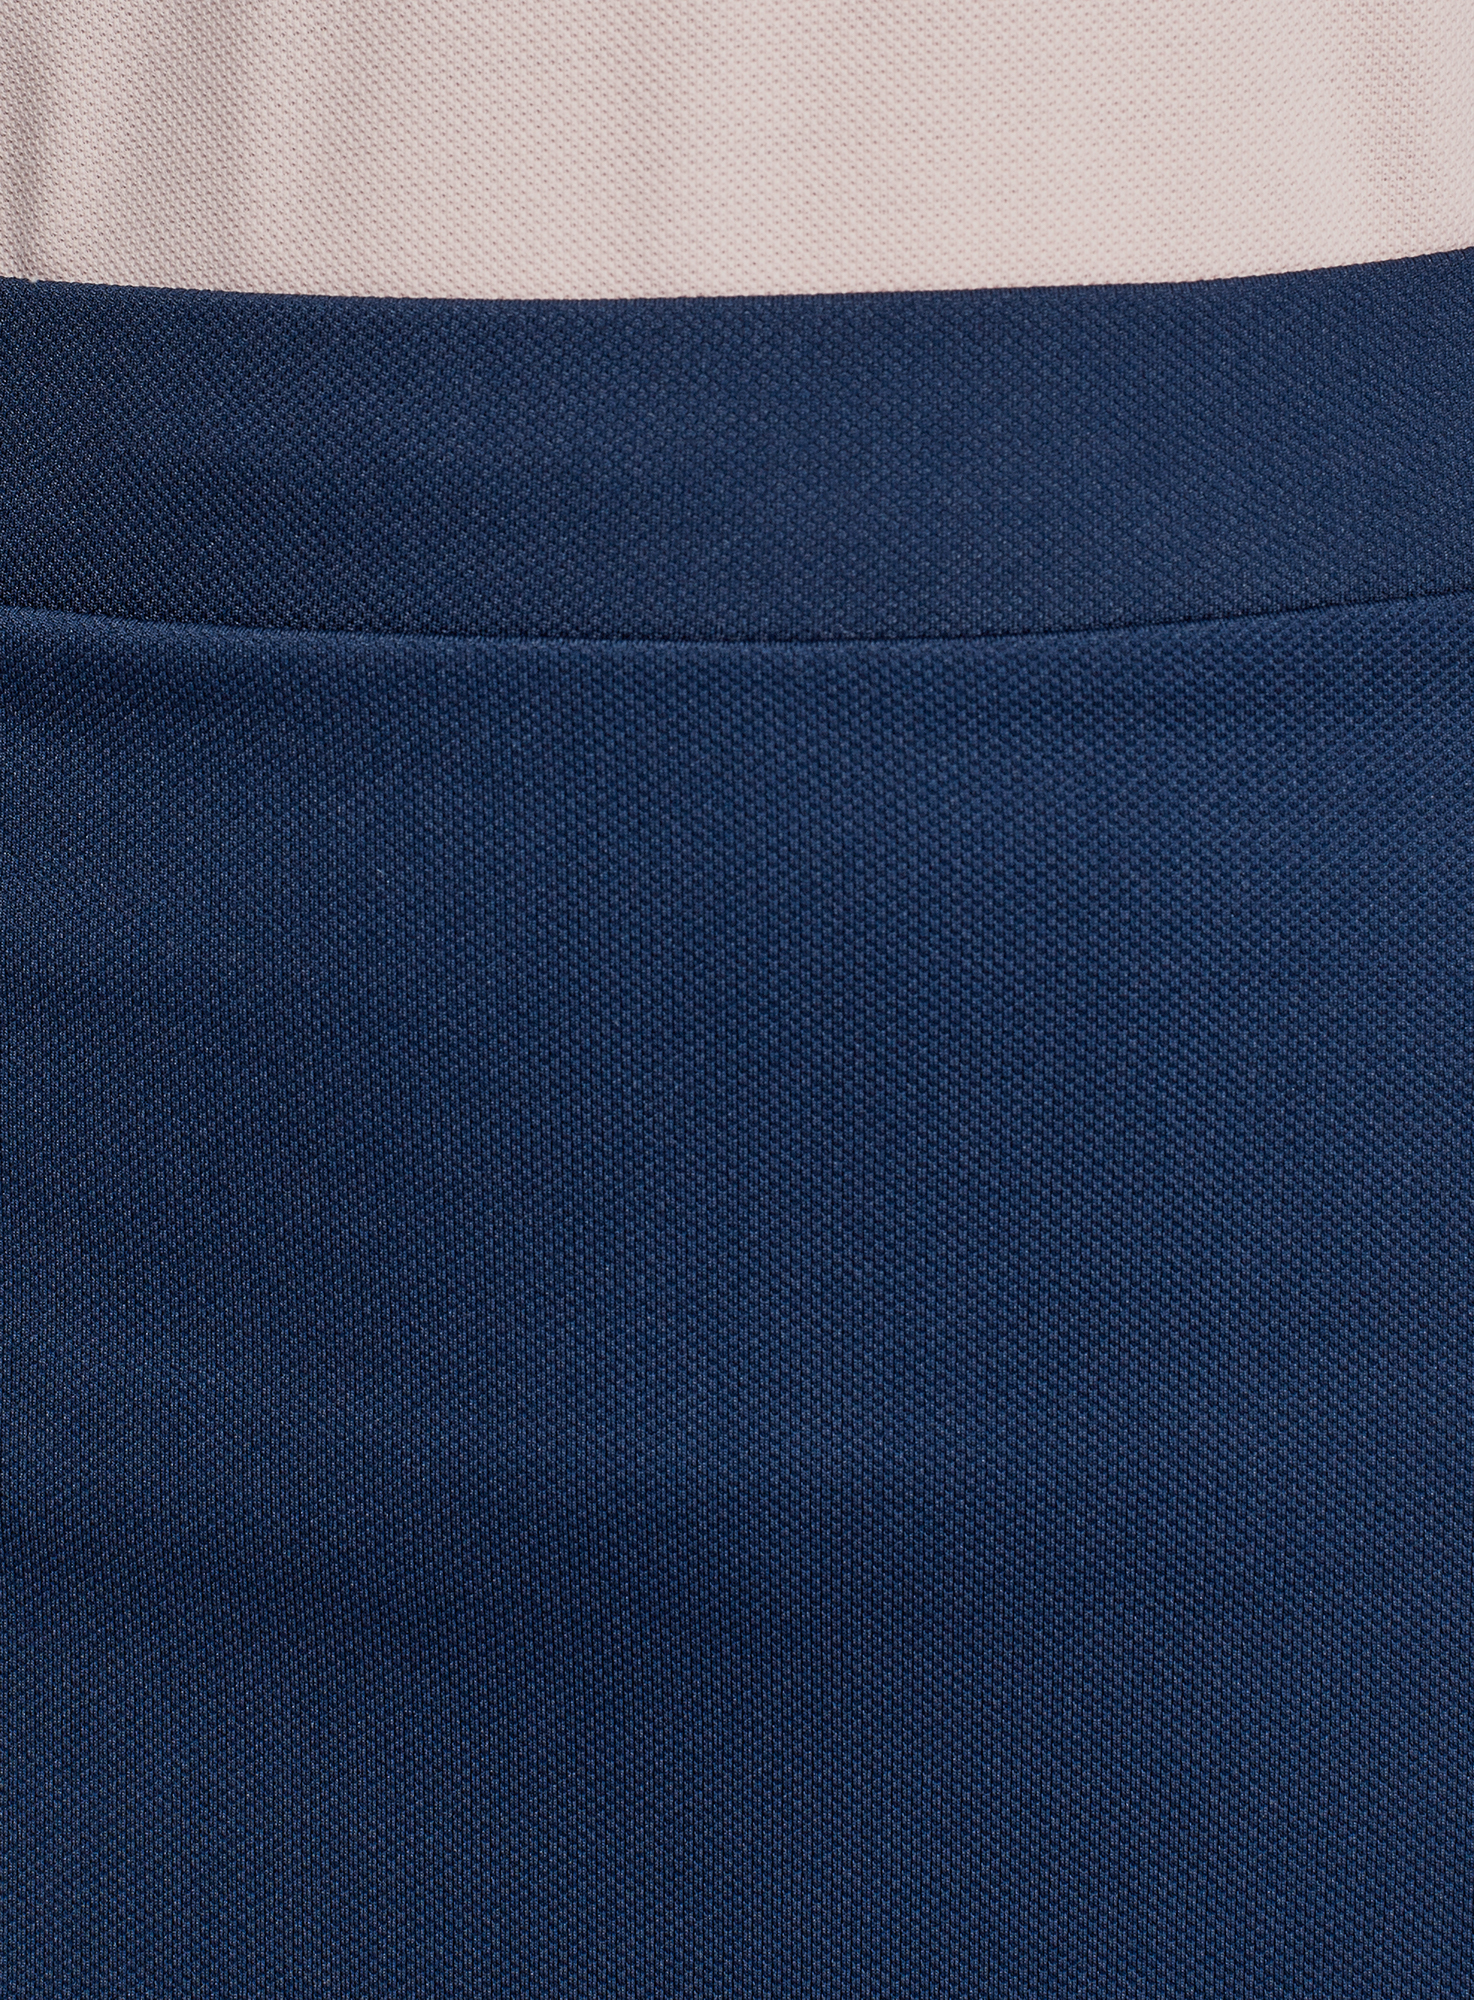 Юбка женская oodji 14101112-1 синяя XL